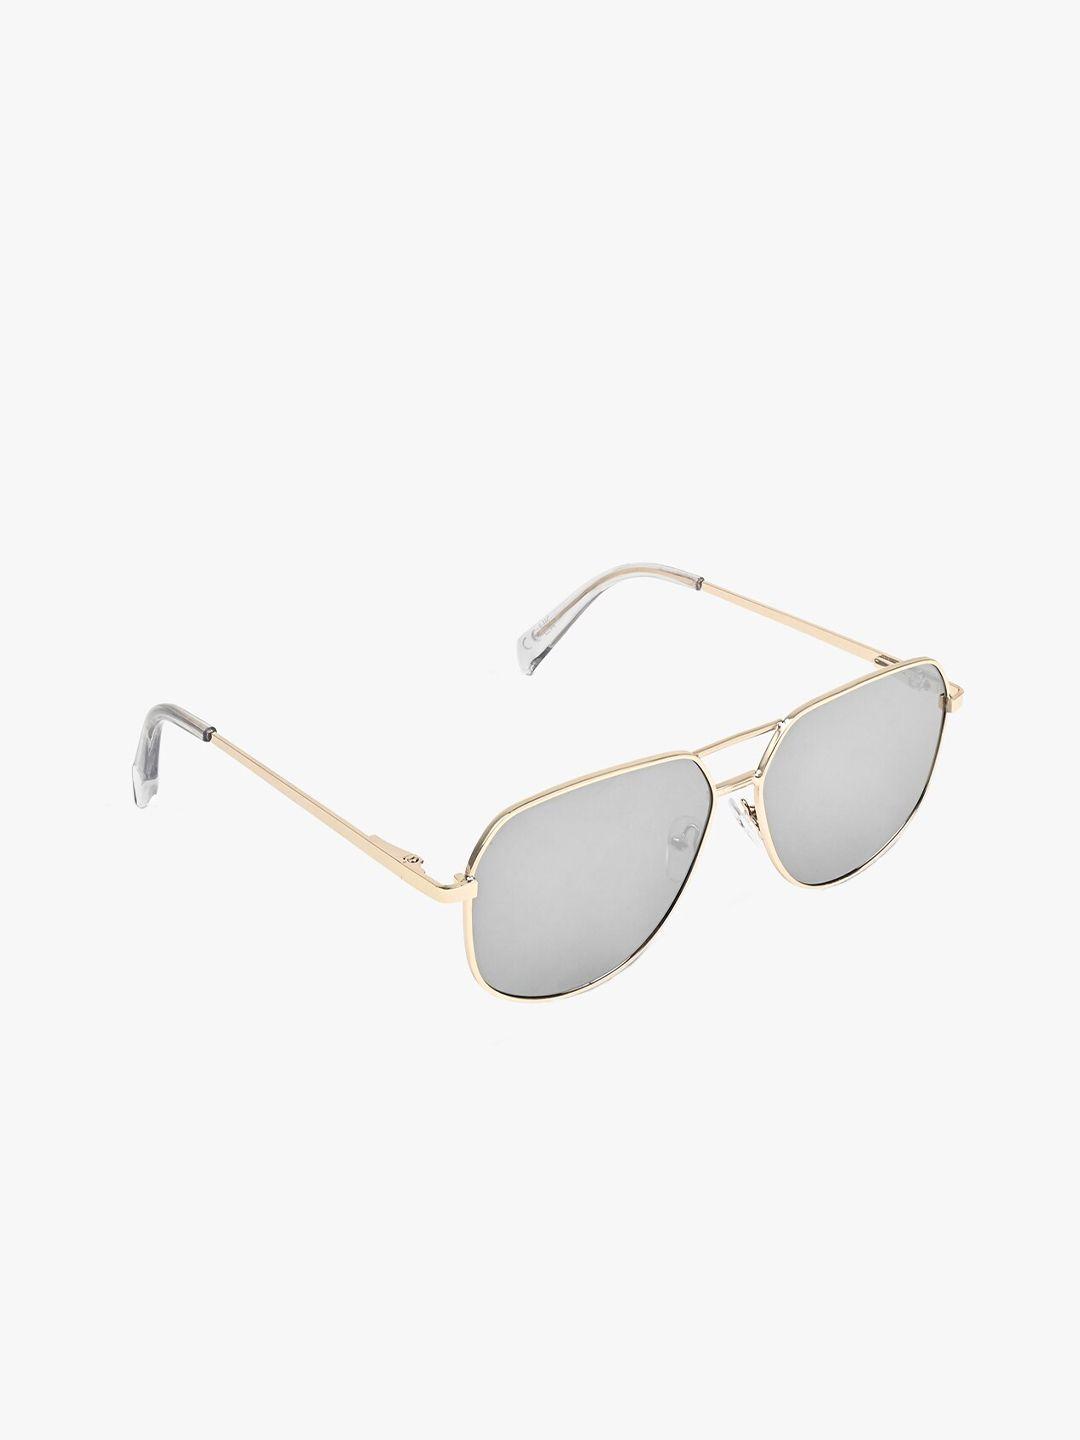 aldo-men-aviator-sunglasses-regular-lens-sunglasses